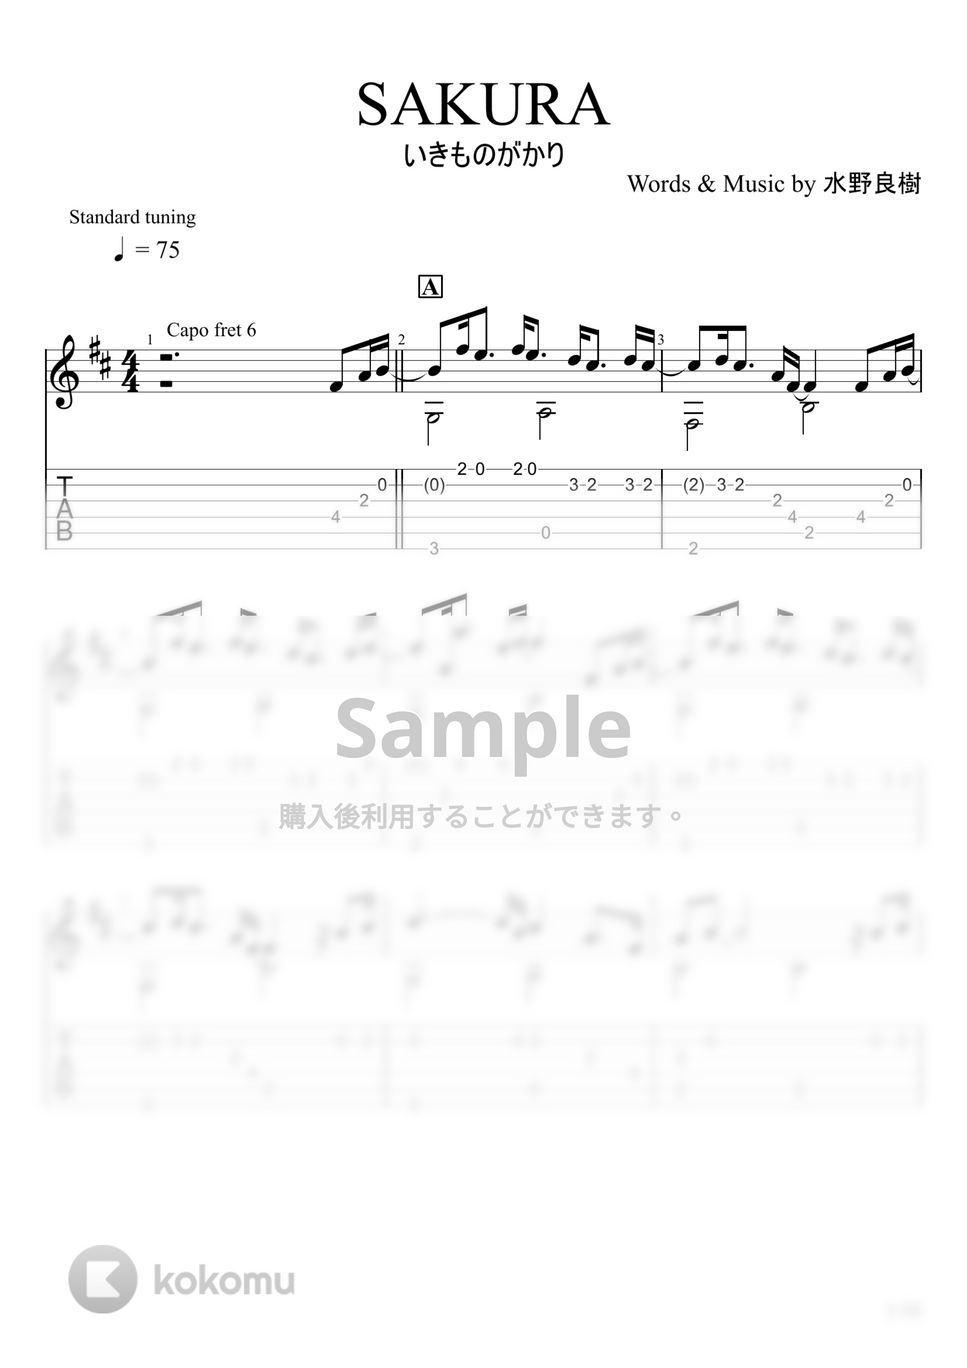 いきものがかり - SAKURA (ソロギター) by u3danchou